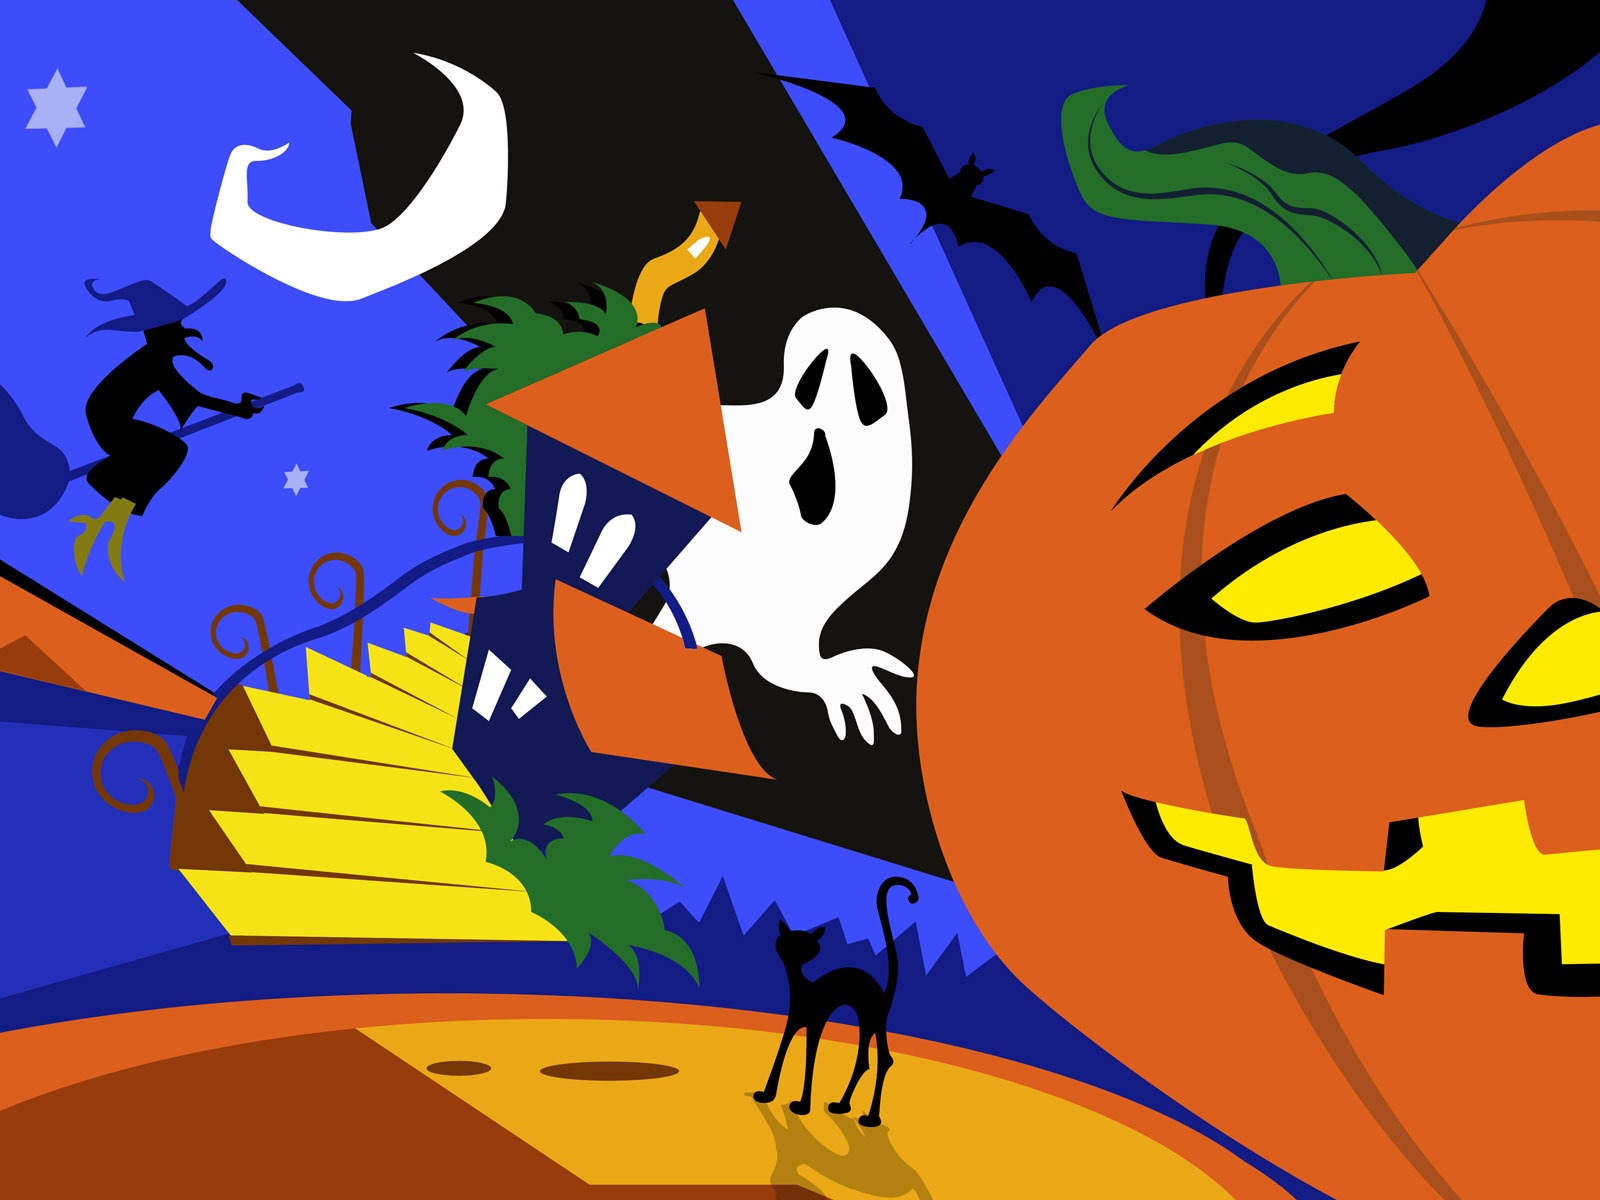 Fondos de Halloween temáticos (5) #1 - 1600x1200